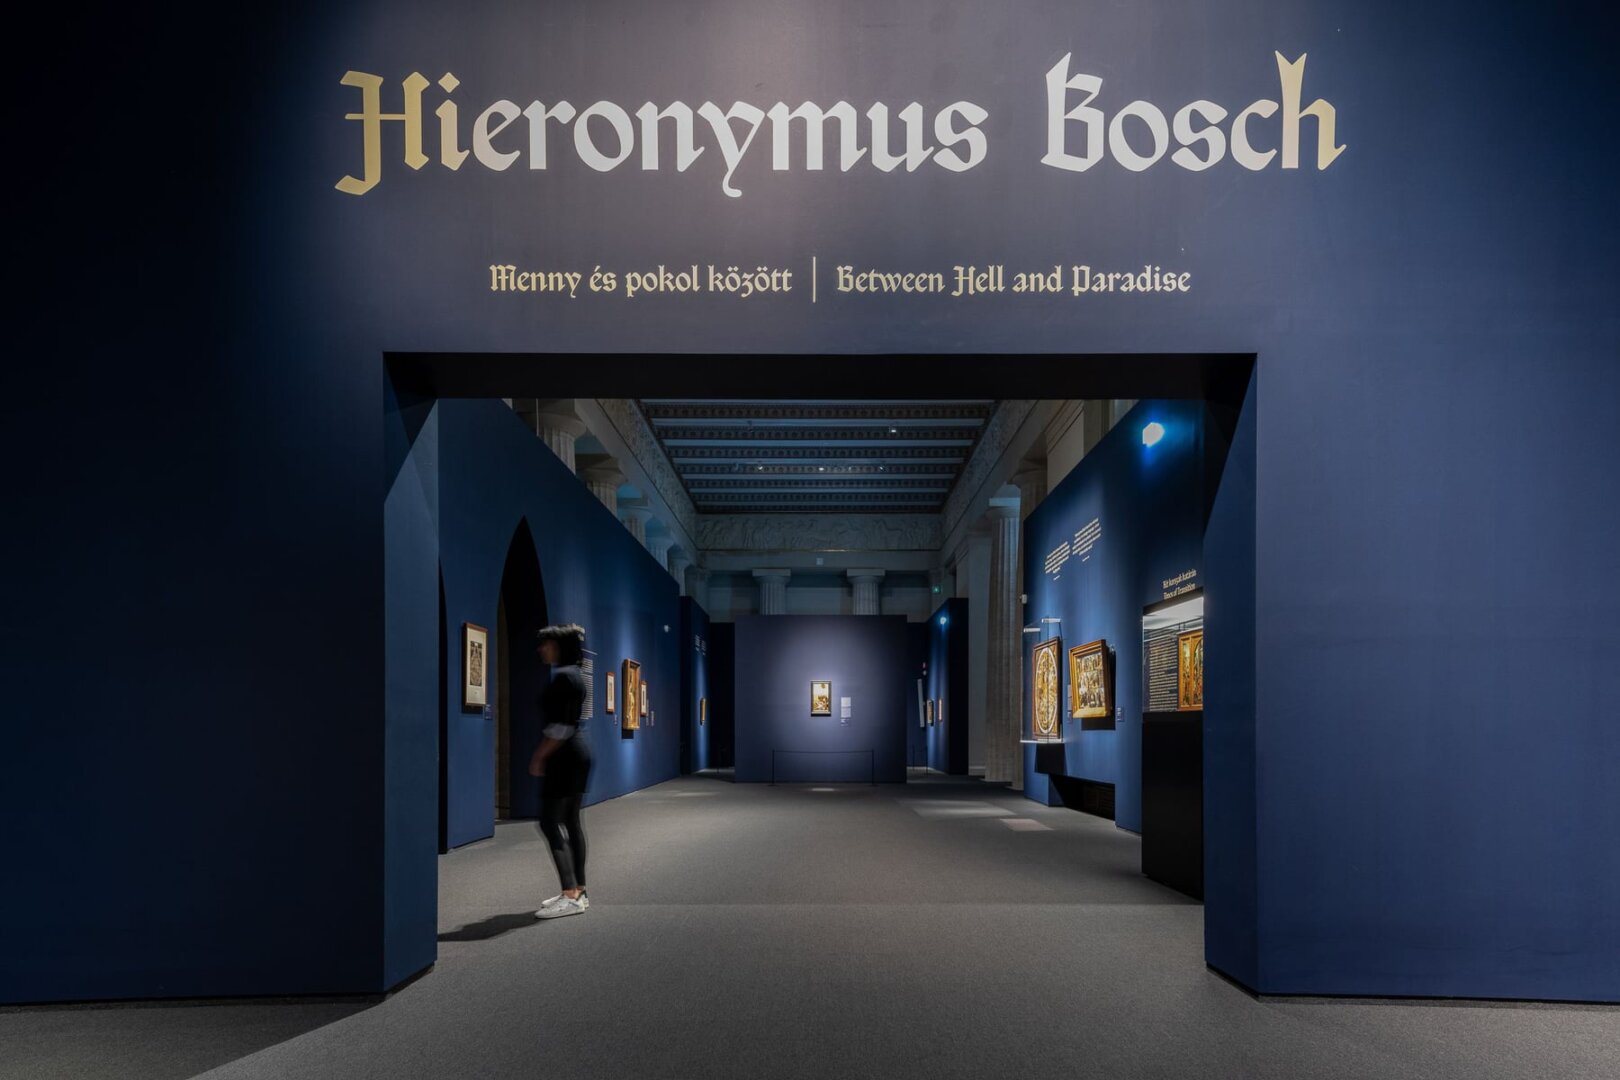 Menny és pokol között. Hieronymus Bosch rejtélyes világa - forrás: Szépművészeti FB-oldala